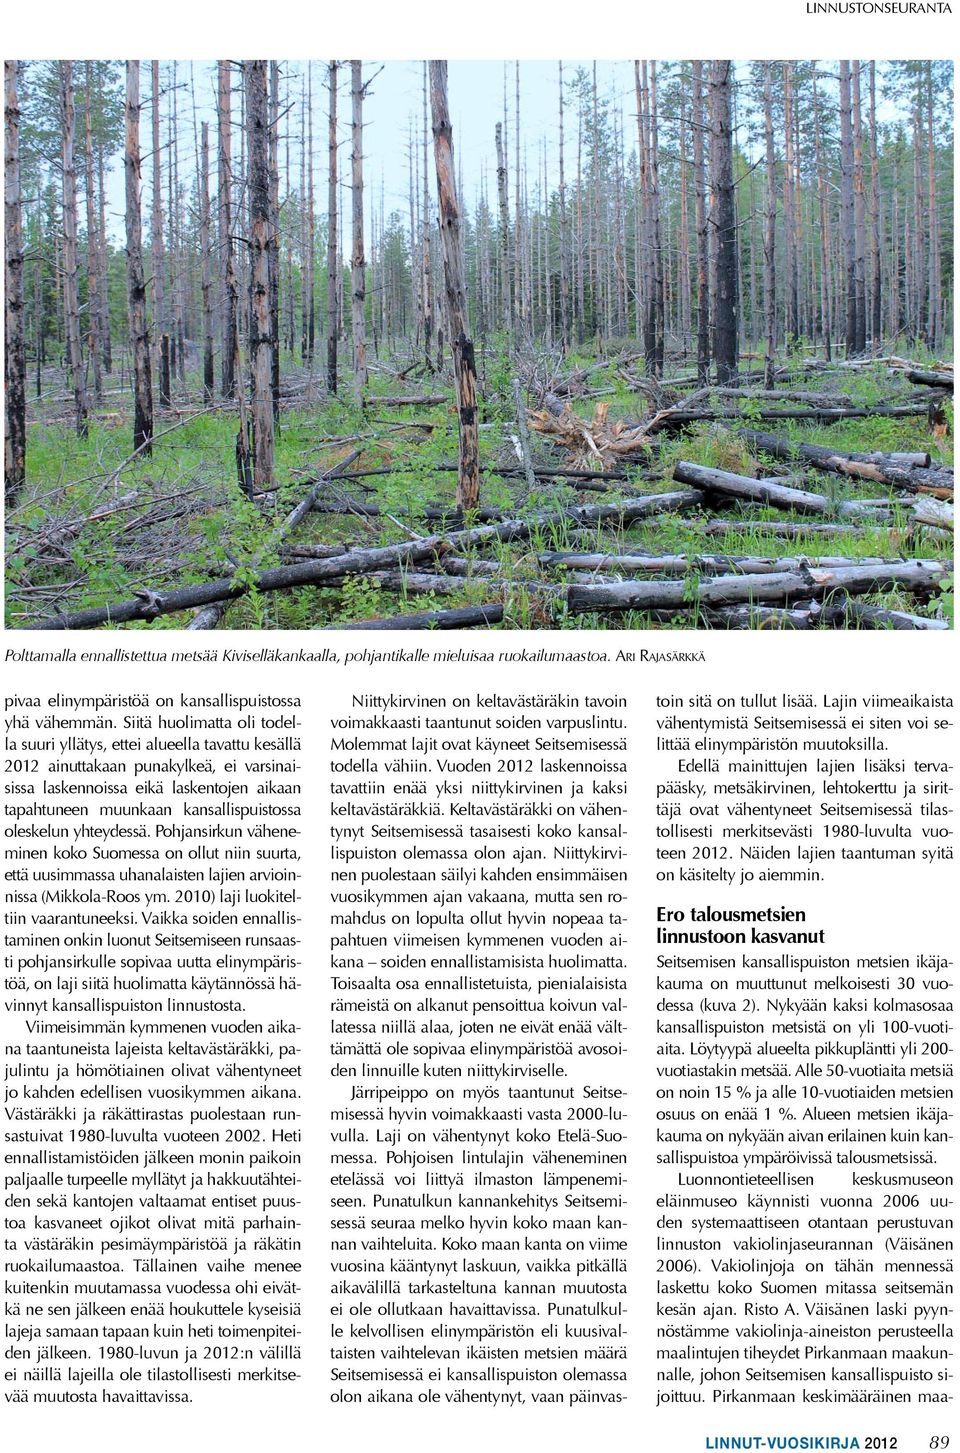 oleskelun yhteydessä. Pohjansirkun väheneminen koko Suomessa on ollut niin suurta, että uusimmassa uhanalaisten lajien arvioinnissa (Mikkola-Roos ym. 2010) laji luokiteltiin vaarantuneeksi.